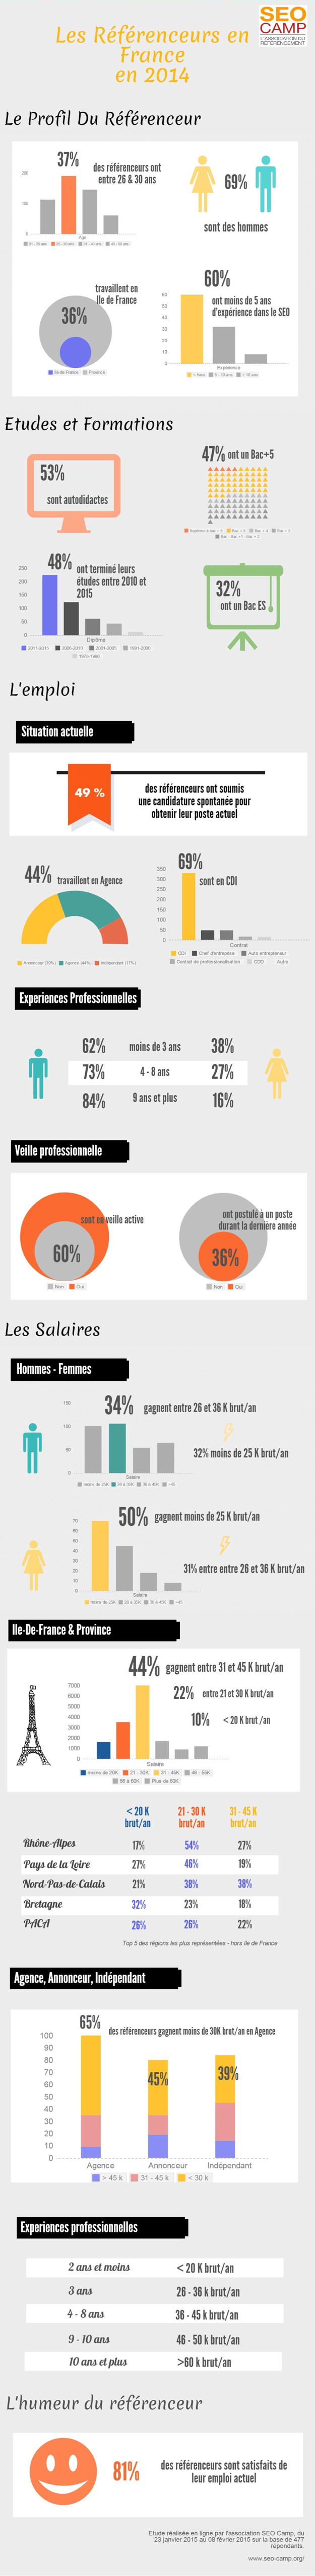 Infographie : salaires des référenceurs SEO en France en 2014